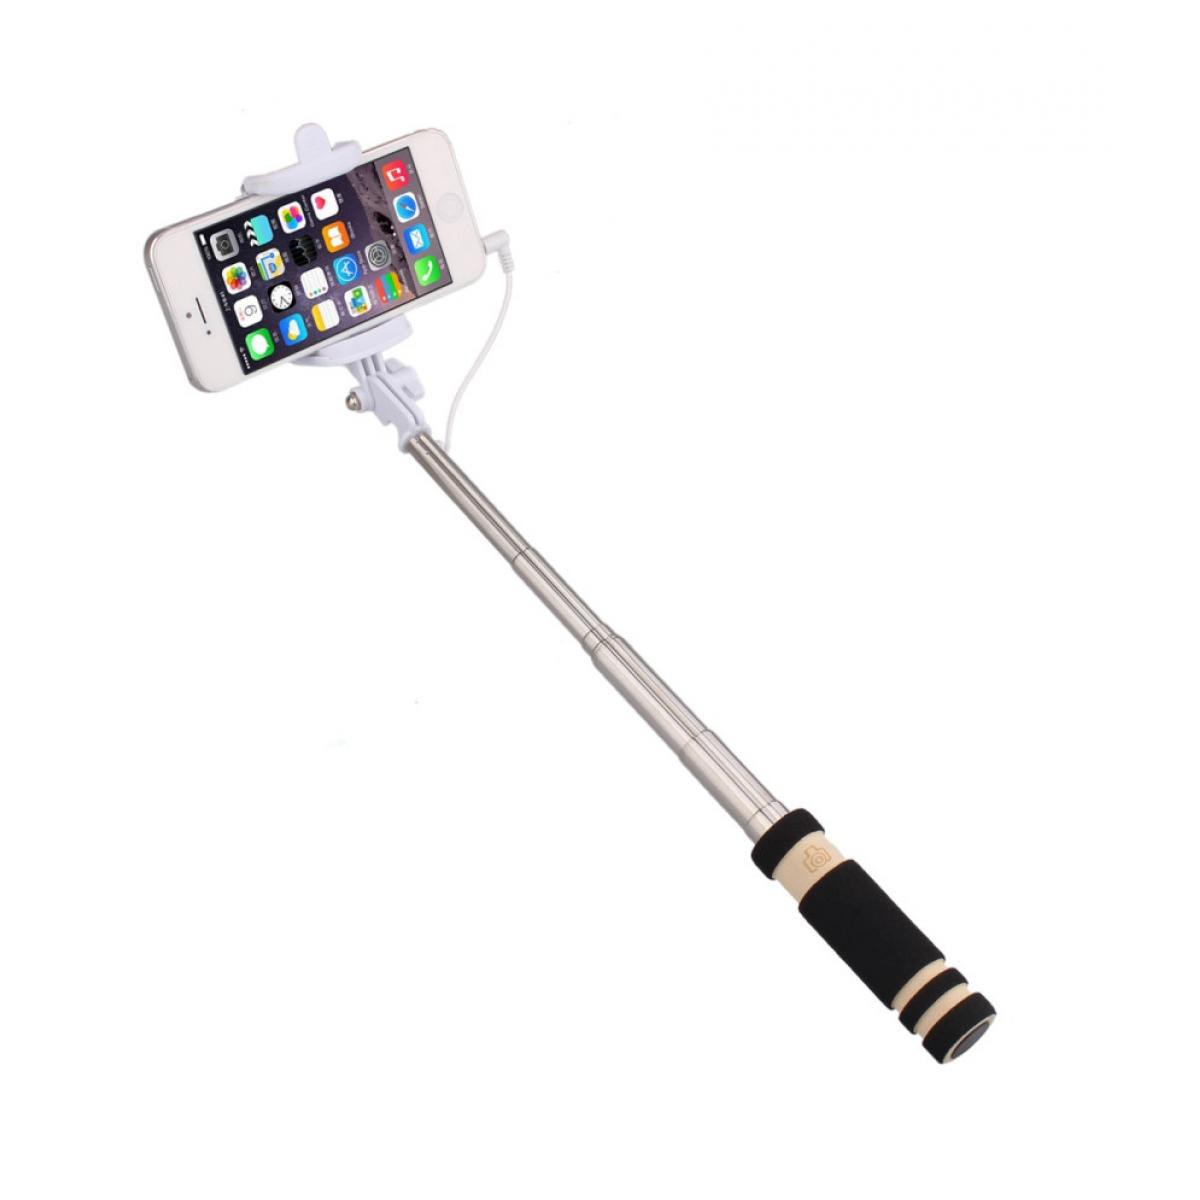 Shot - Mini Perche Selfie pour SAMSUNG Galaxy Note 10 Lite Smartphone avec Cable Jack Selfie Stick Android IOS Reglable Bouton Photo (NOIR) - Autres accessoires smartphone